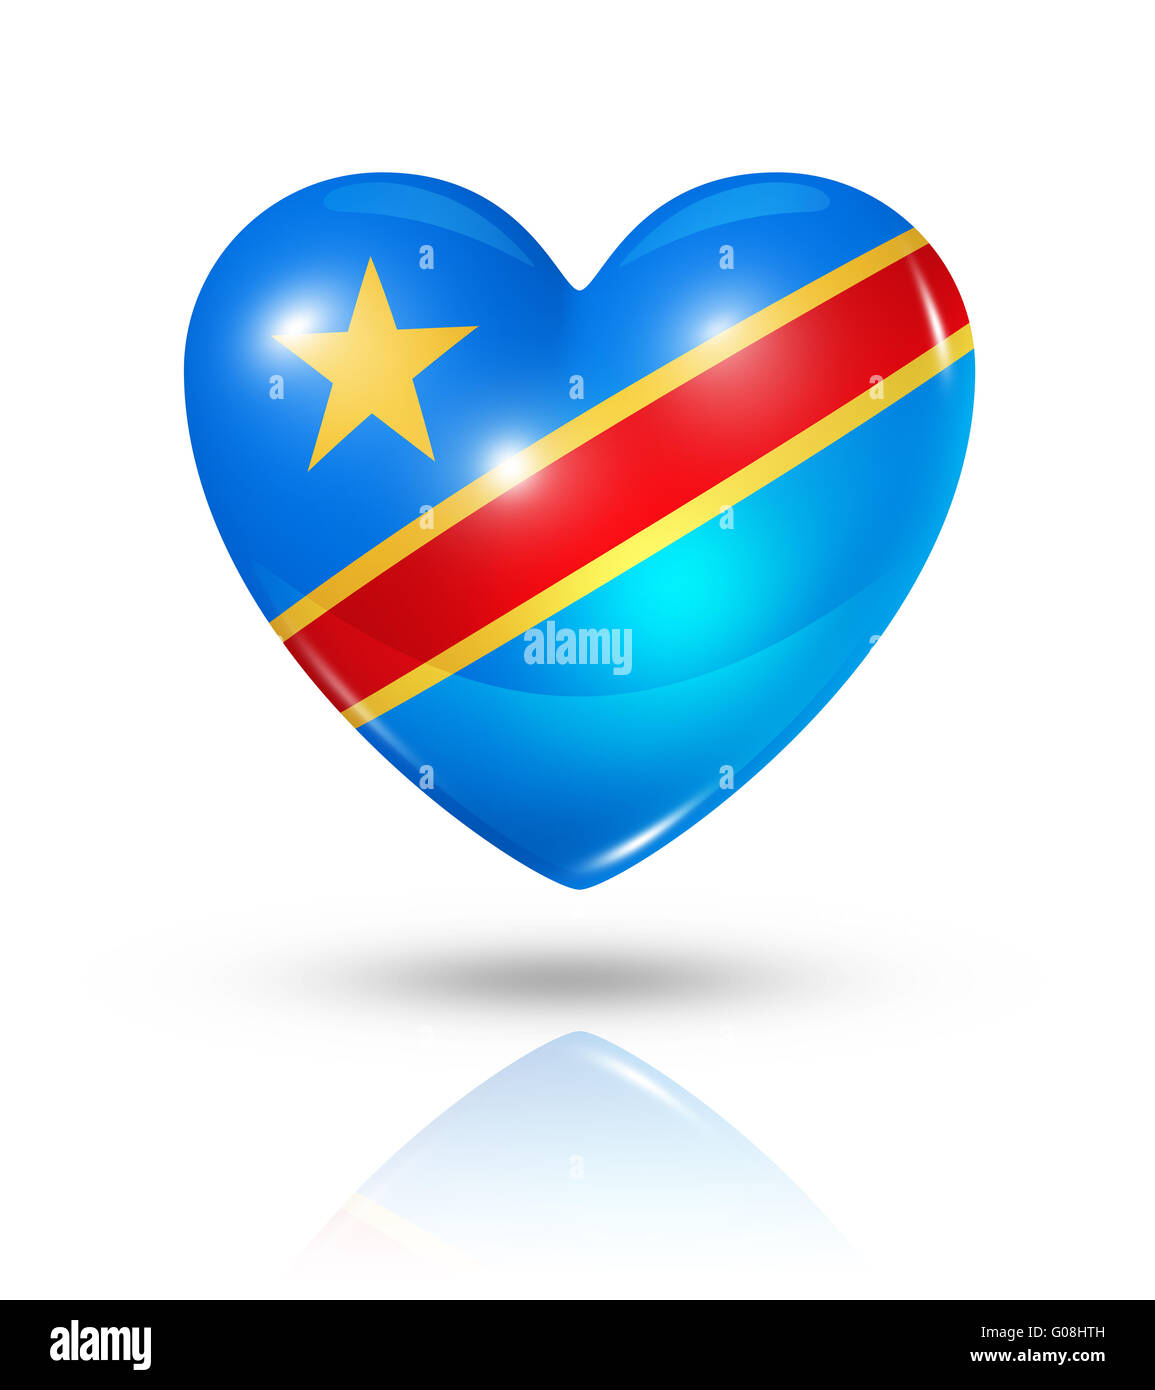 Love Democratic Republic of the Congo, heart flag icon Stock Photo